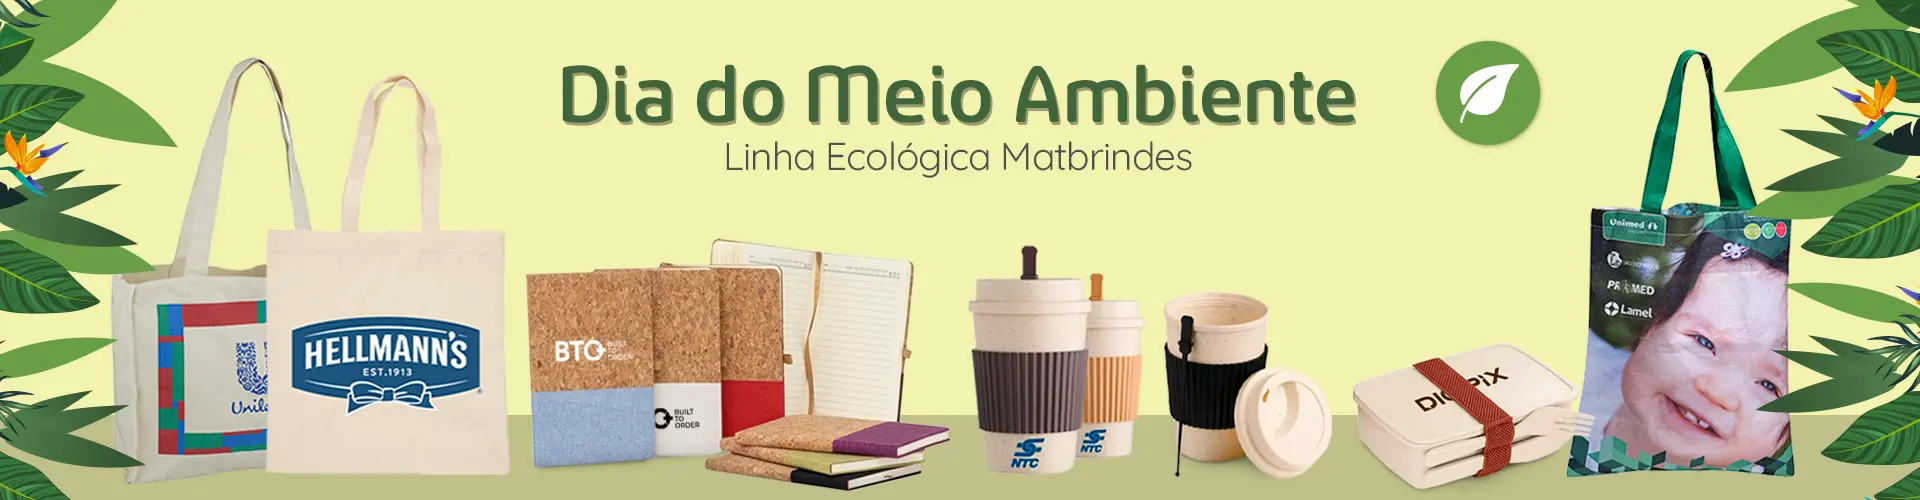 Banner Brindes Ecológicos para o Dia do Meio Ambiente